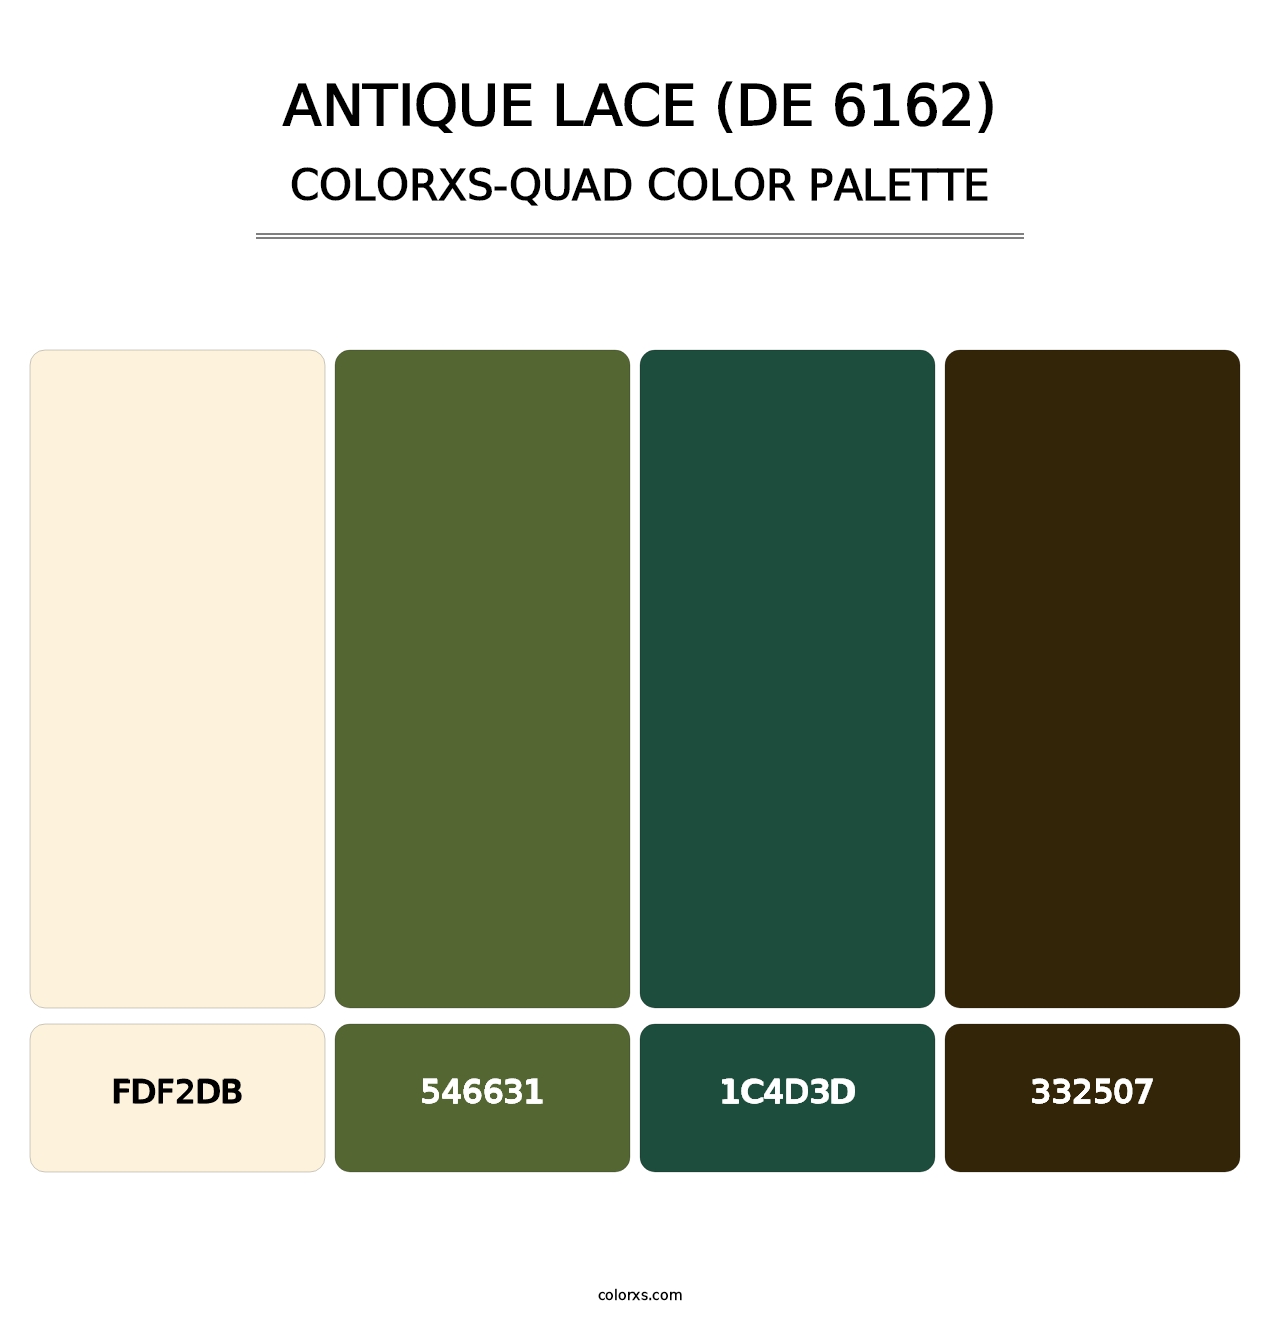 Antique Lace (DE 6162) - Colorxs Quad Palette